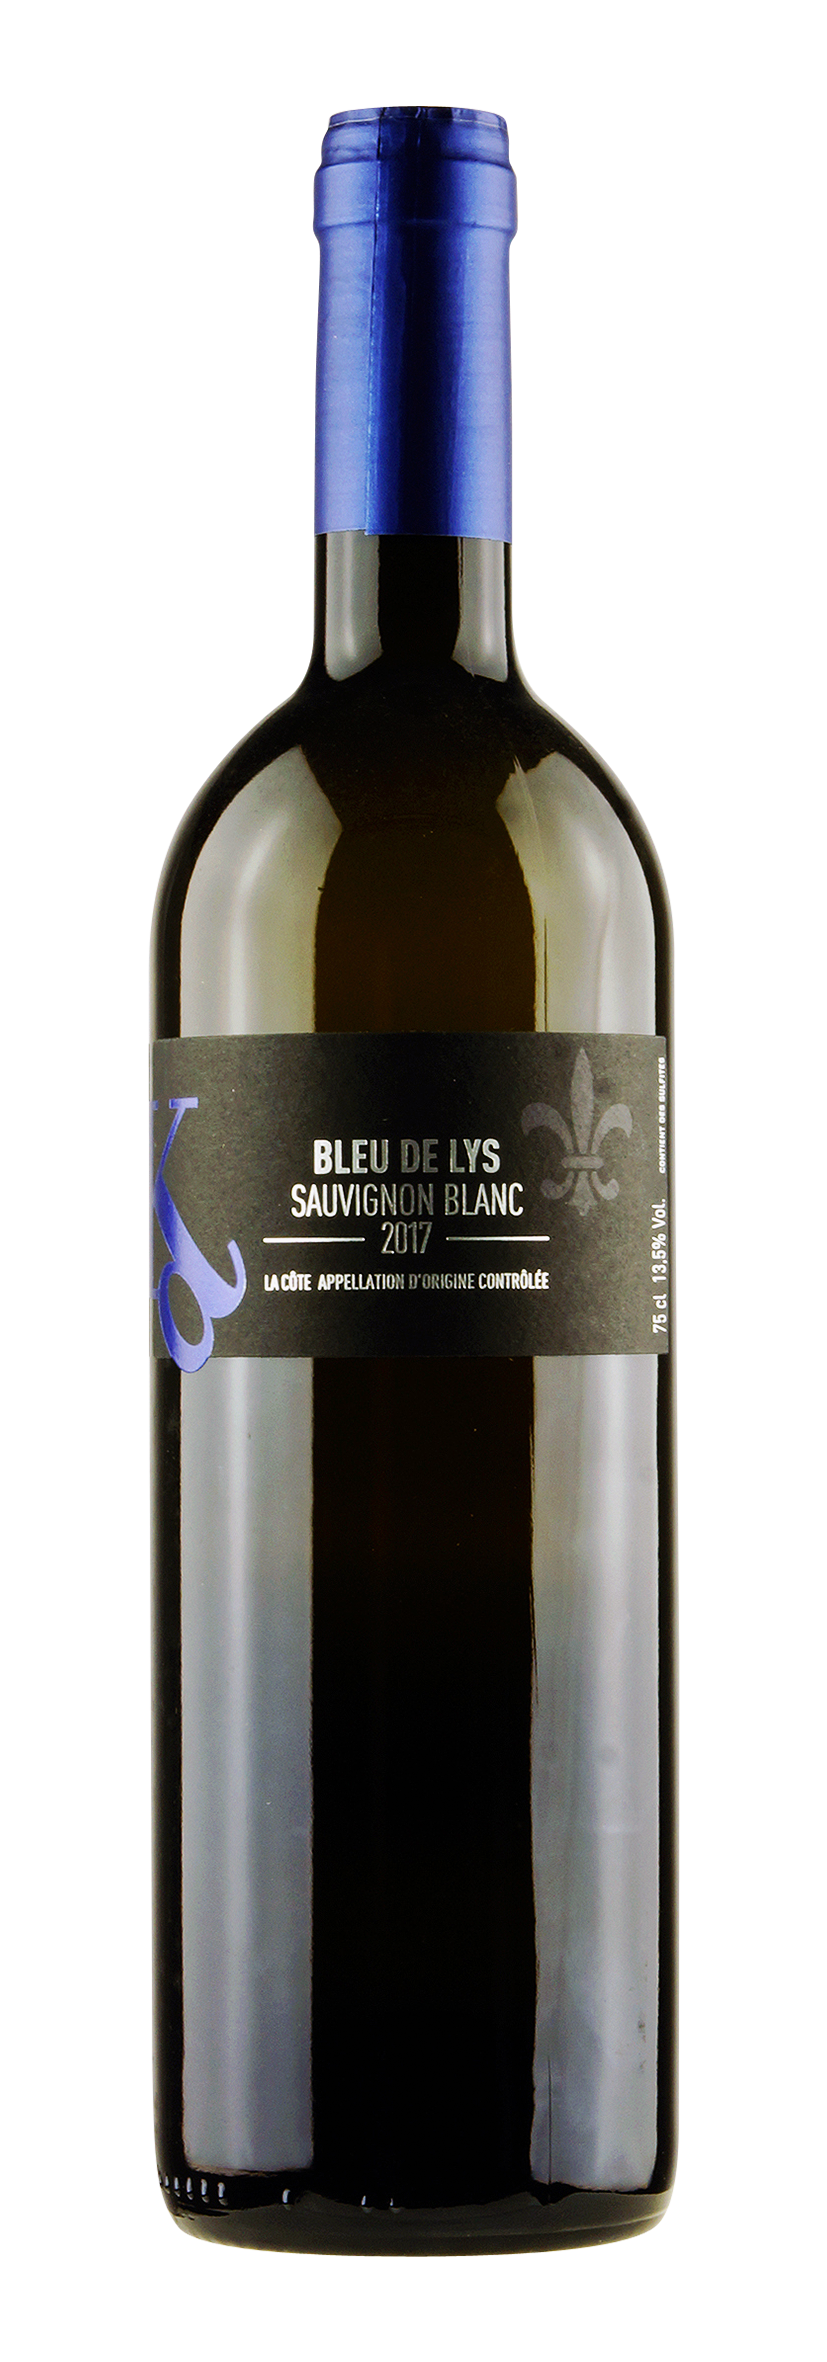 La Côte AOC Sauvignon Blanc Bleu de Lys 2017